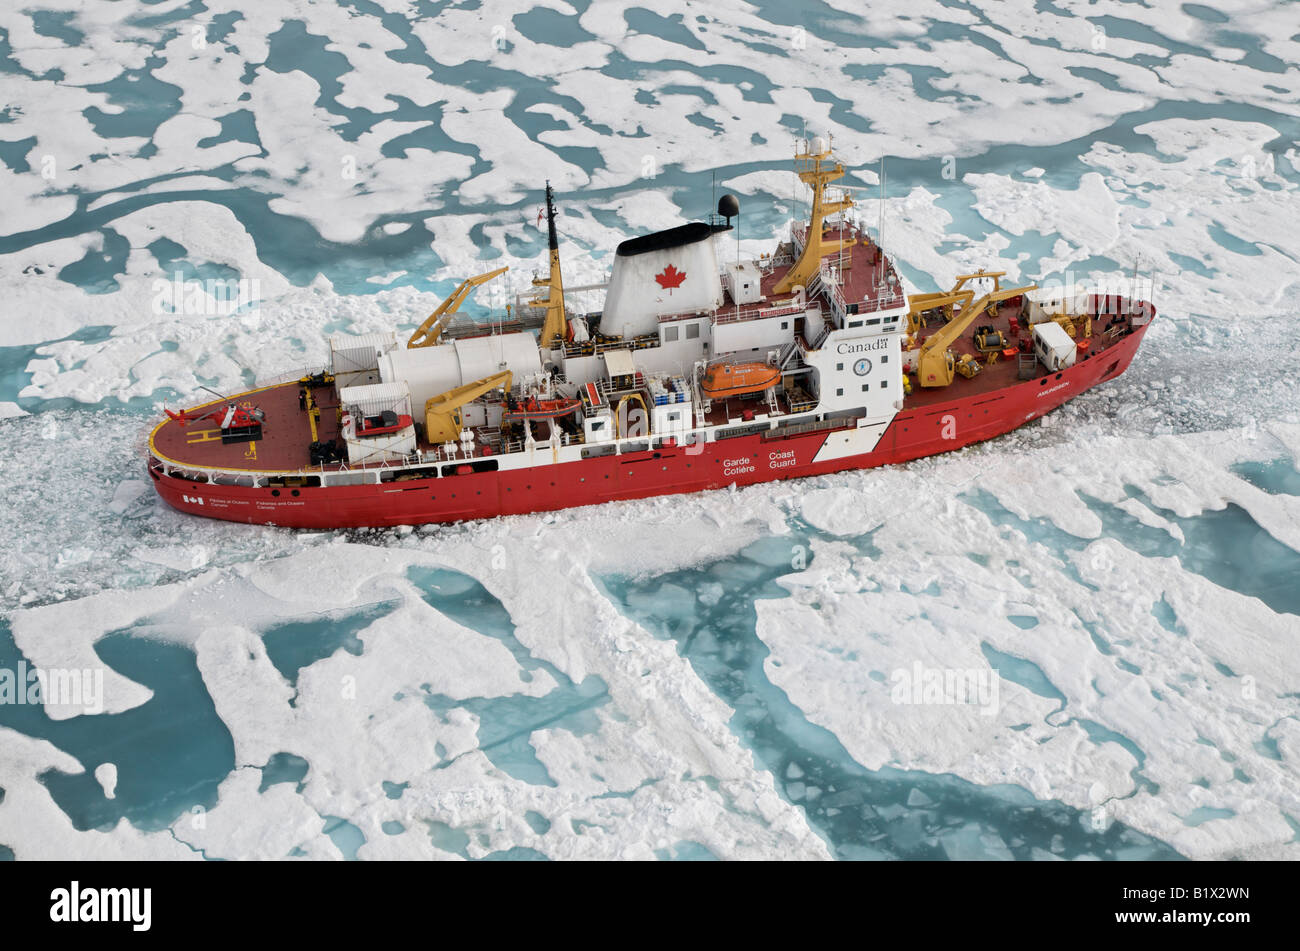 CCGS Amundsen Schiff der kanadischen Küstenwache Icebreaker und Arktisforschung.  Gesehen im Amundsen Golf.  Frühling Zeit Eis. Stockfoto